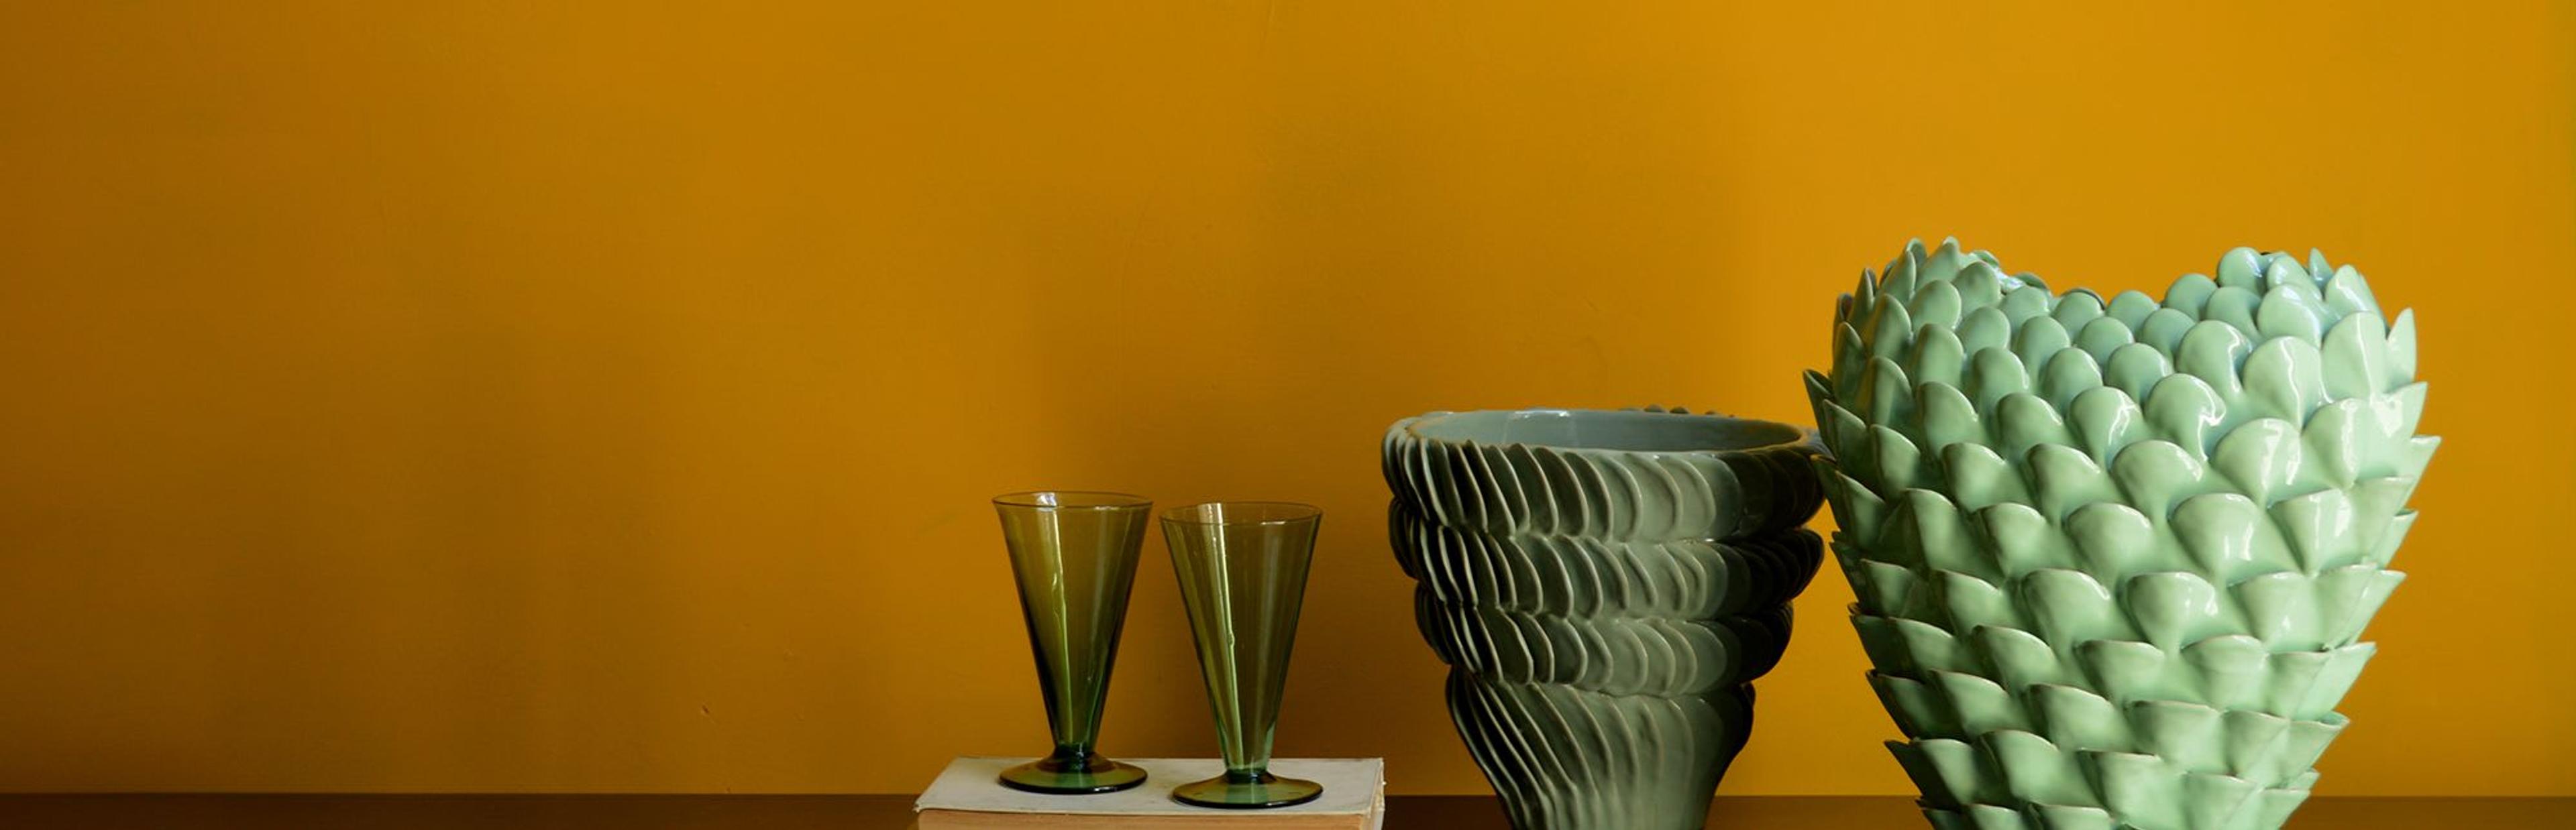 Ceramics Vases banner